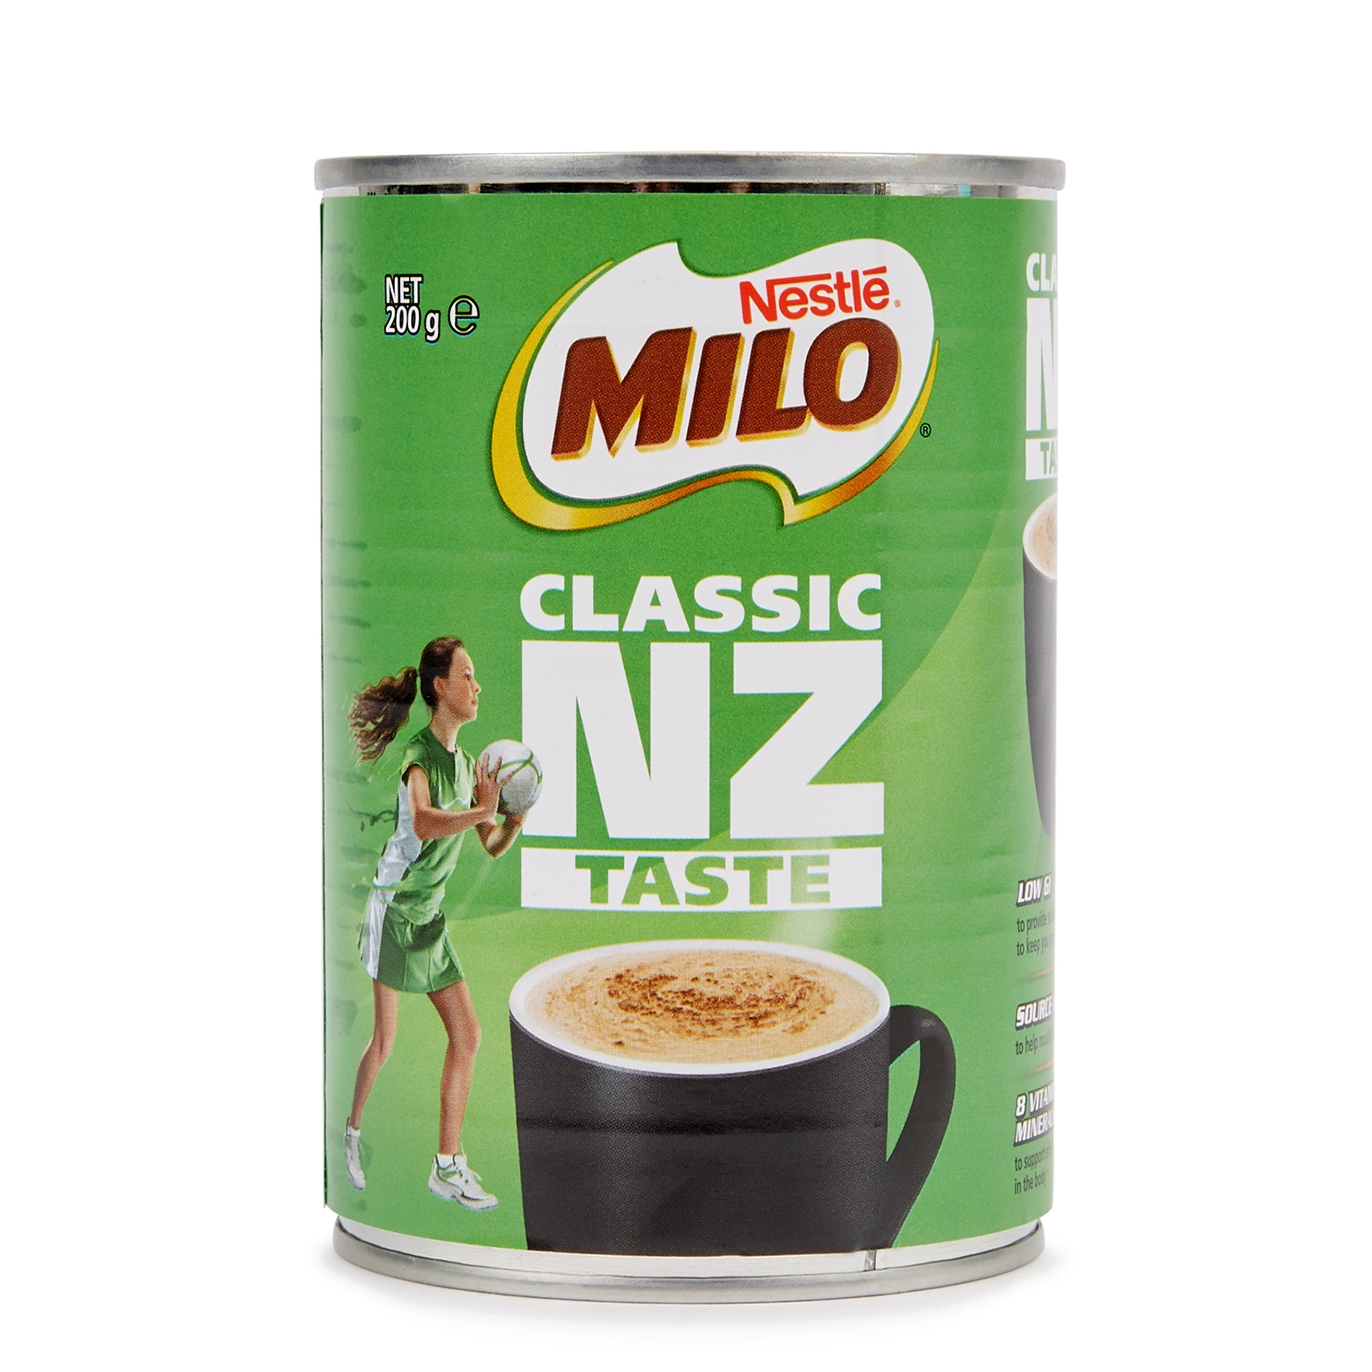 Nestlé Milo 200g